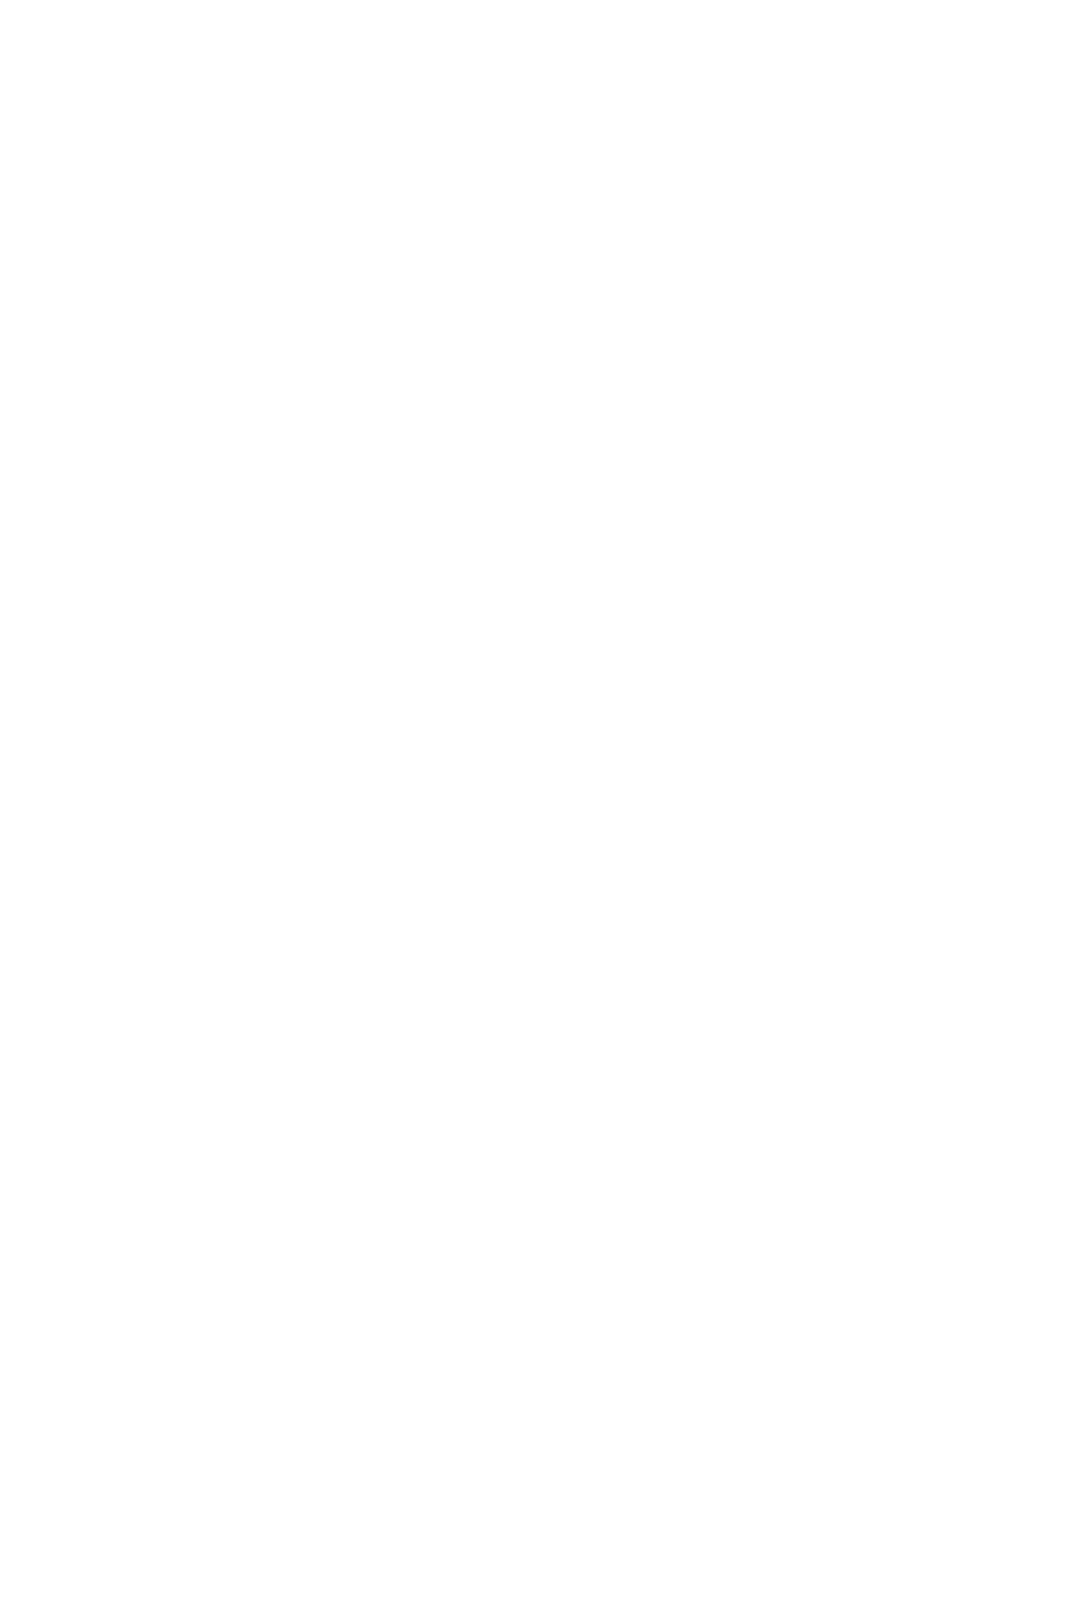 小島梨里杏1st写真集 「半透明」メイキング映像公開！飾らぬ笑顔と真剣な眼差しの対比に注目サムネイル画像!